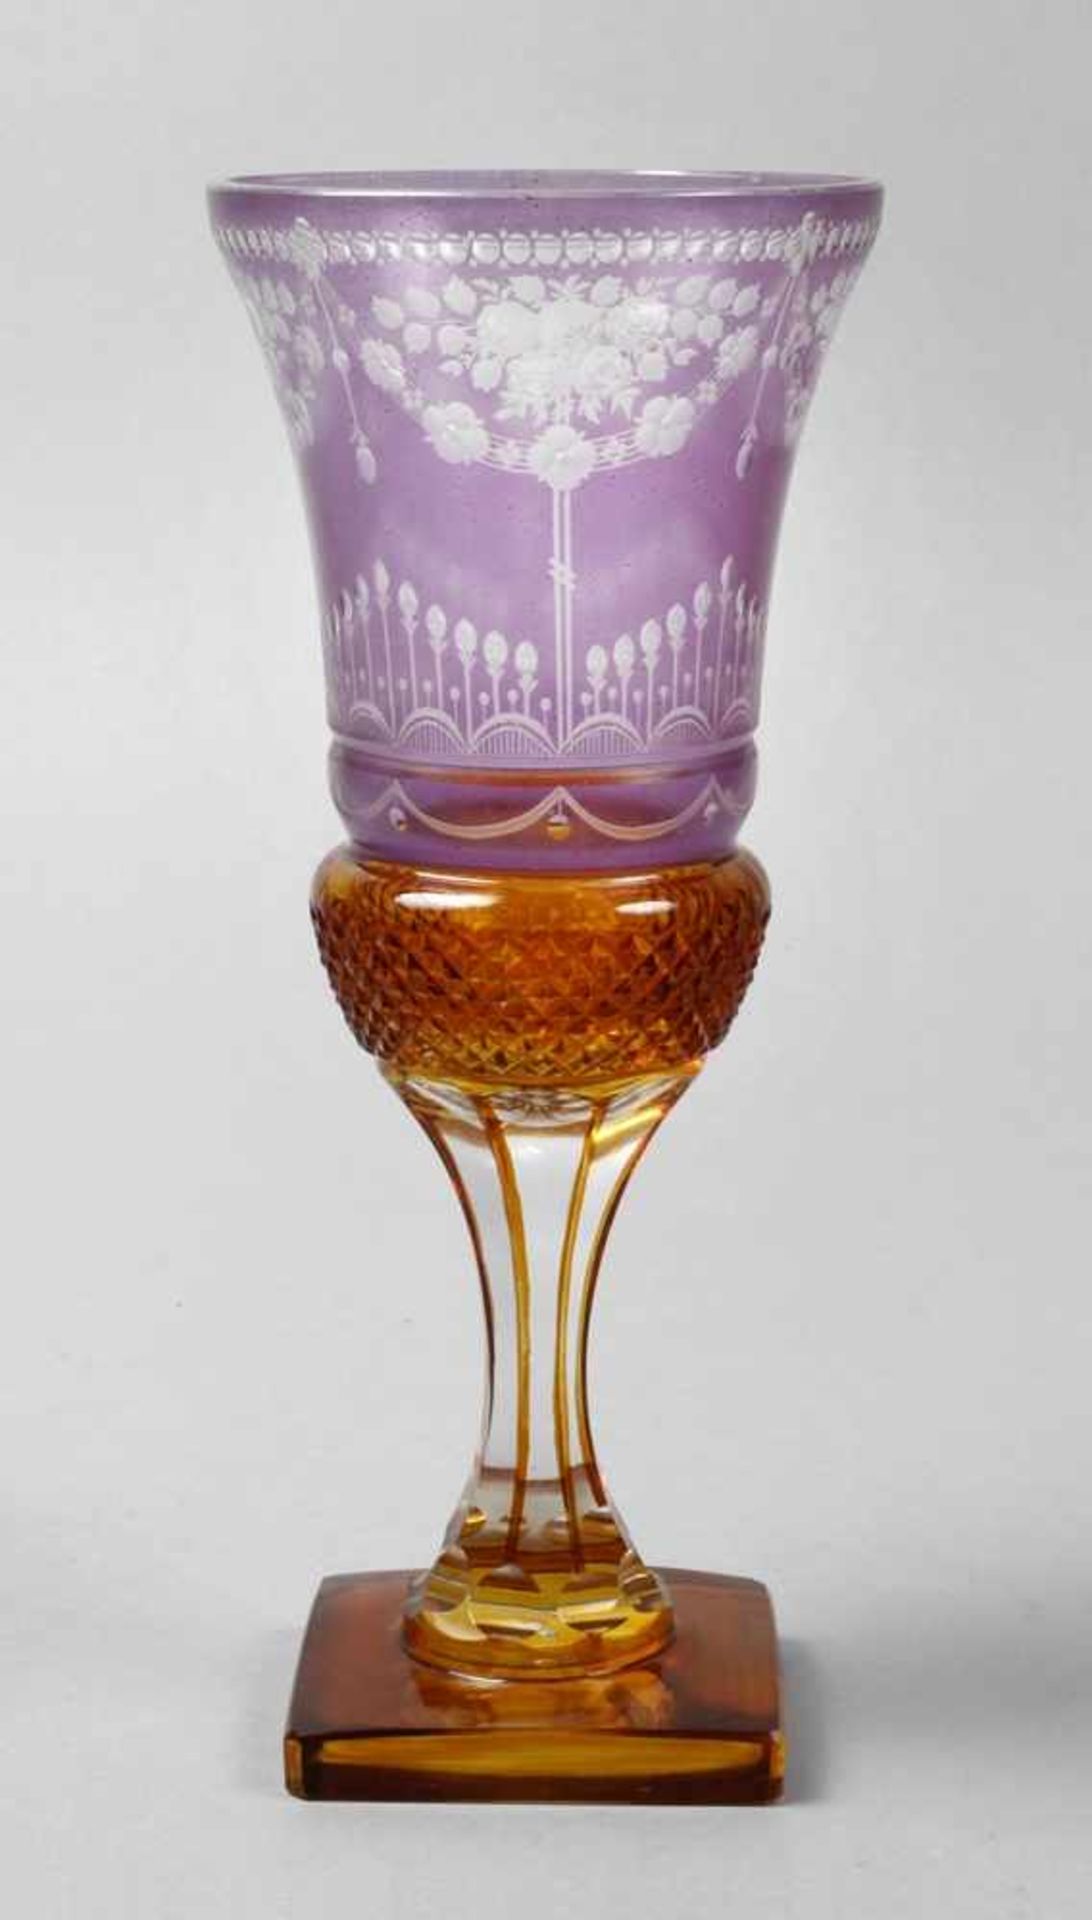 Pokal im Biedermeierstilum 1900, farbloses Glas, plangeschliffener Stand, gelb gebeizt, violett